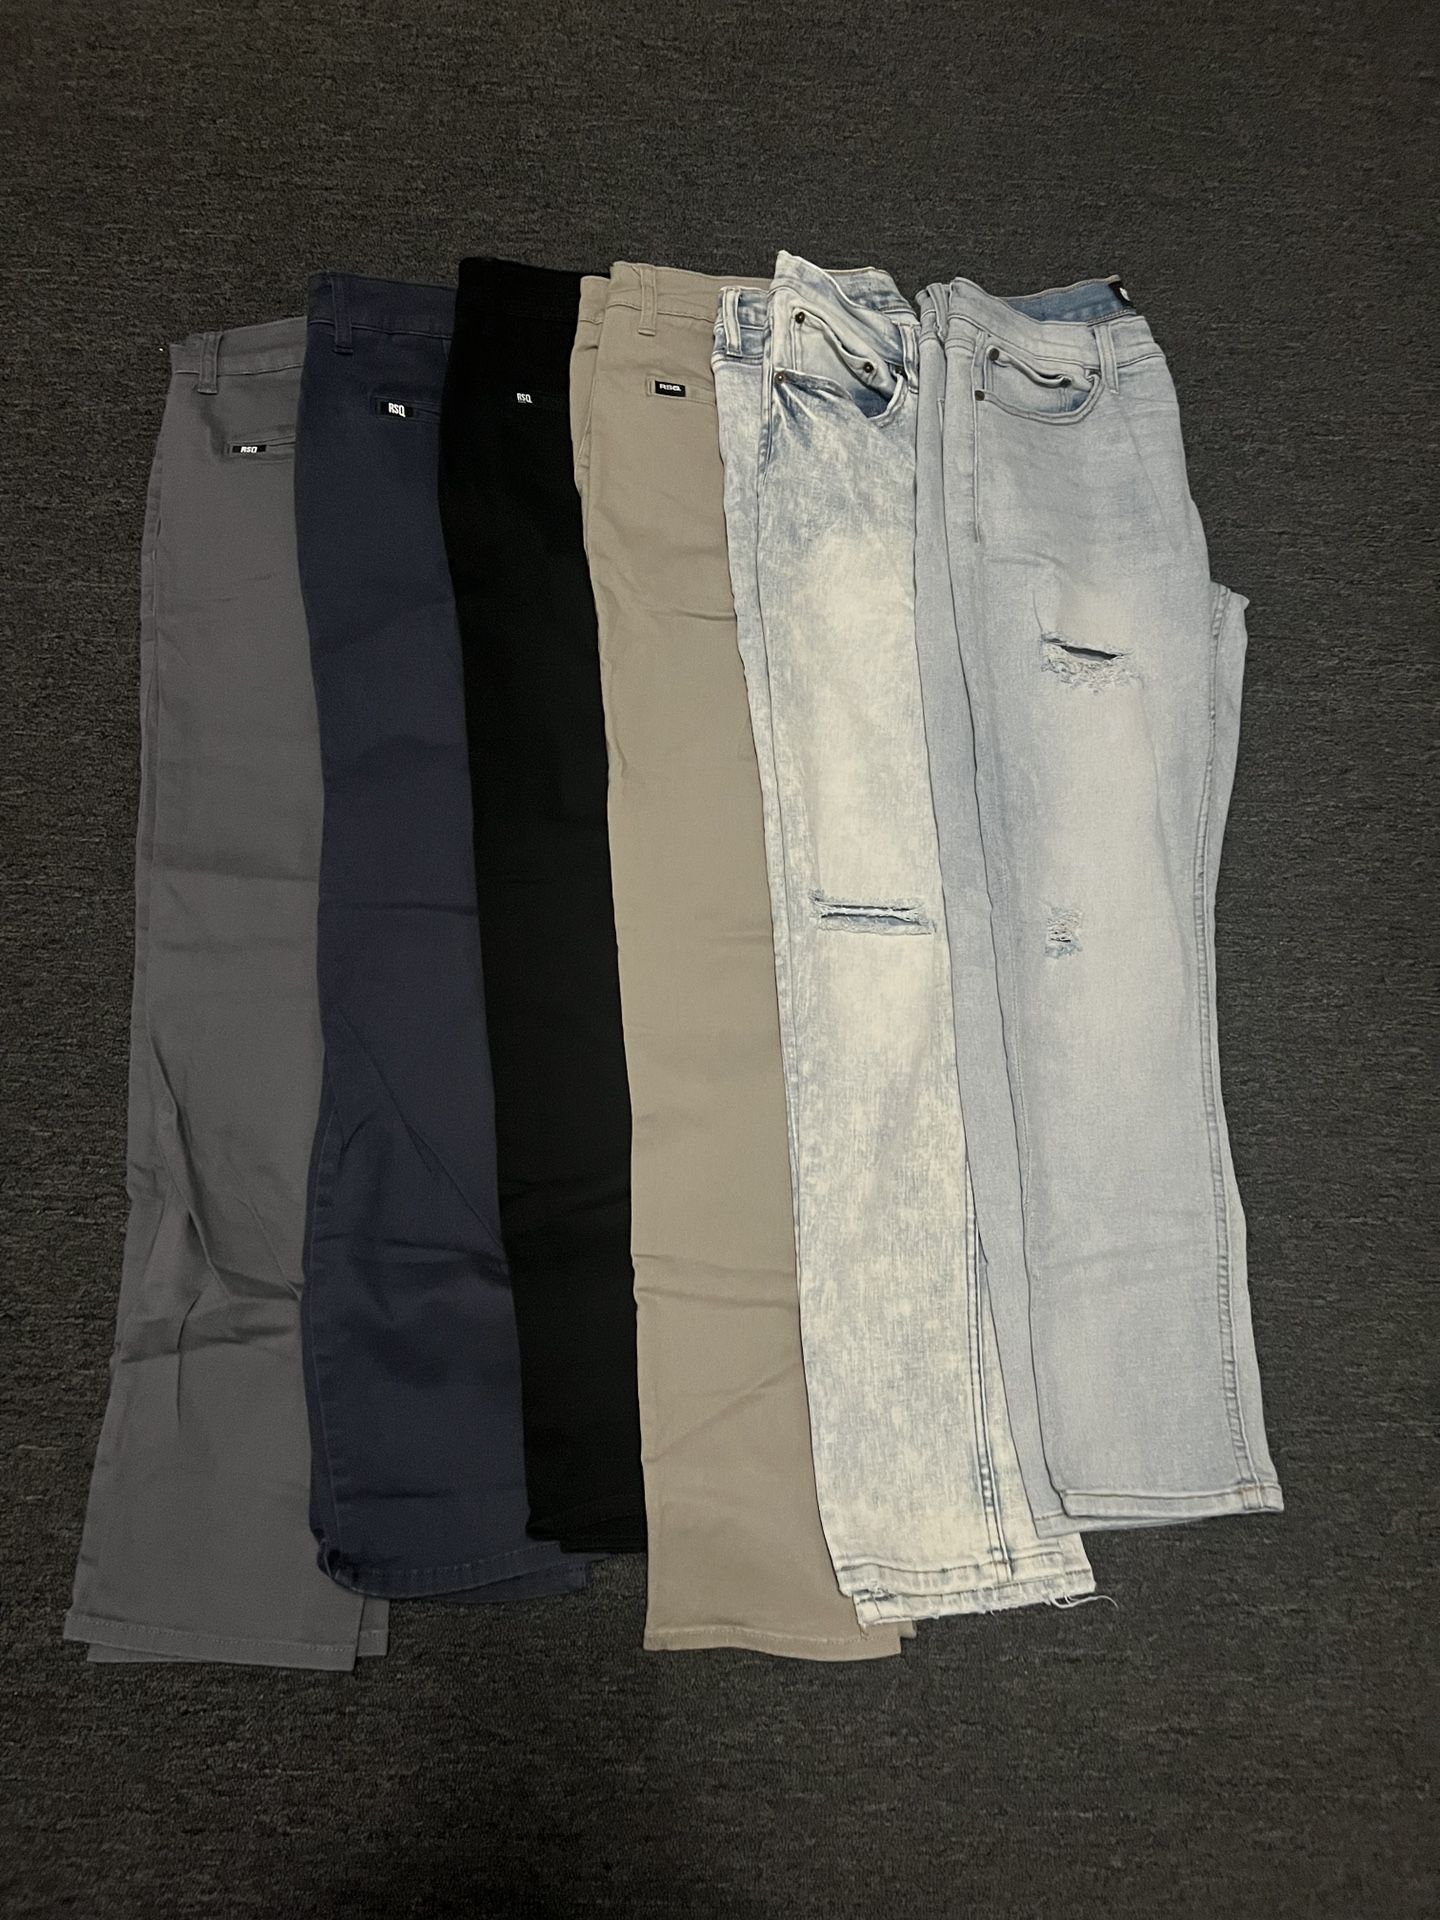 SRQ Pants 30x30  (Like New) $20 Each 